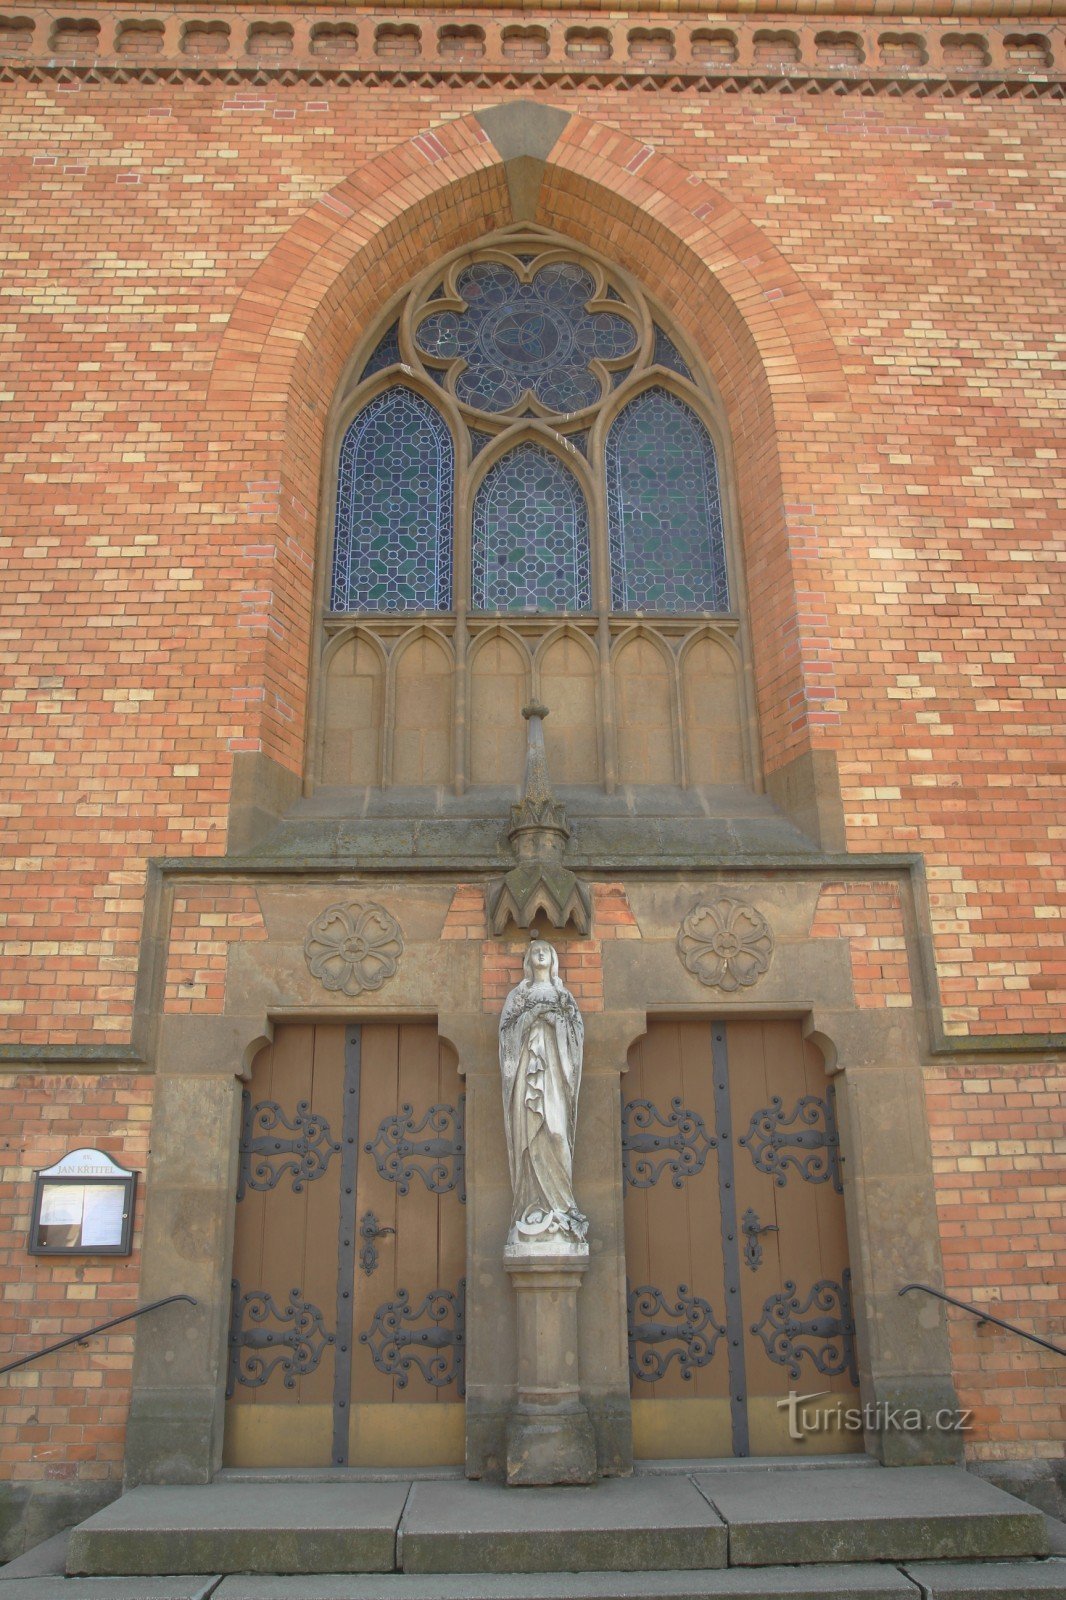 Detalhe da entrada principal da igreja